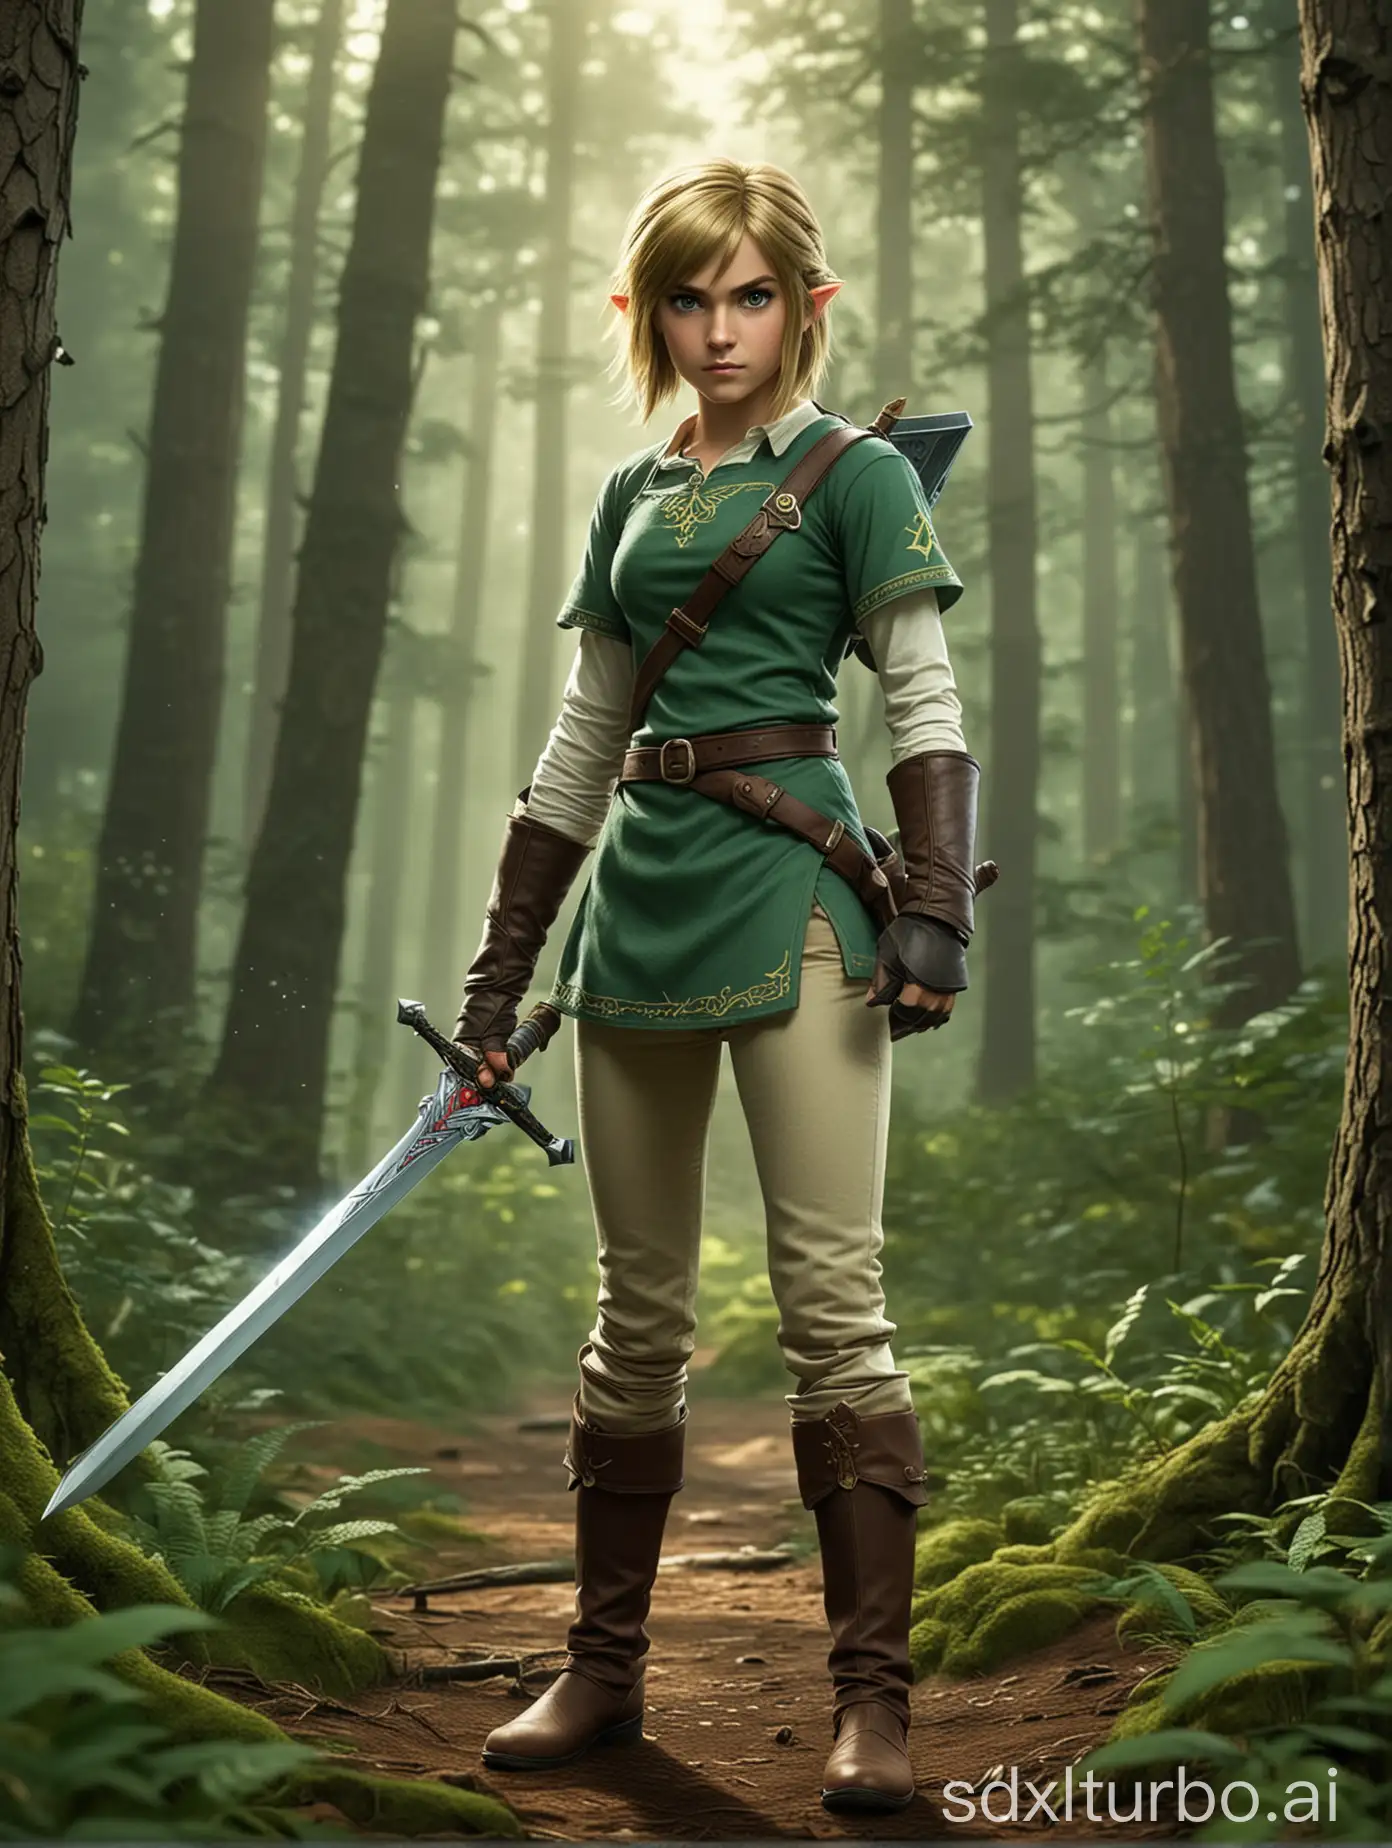 Link as a teen girl, short hair, in a forest, wielding a sword, Legend of Zelda